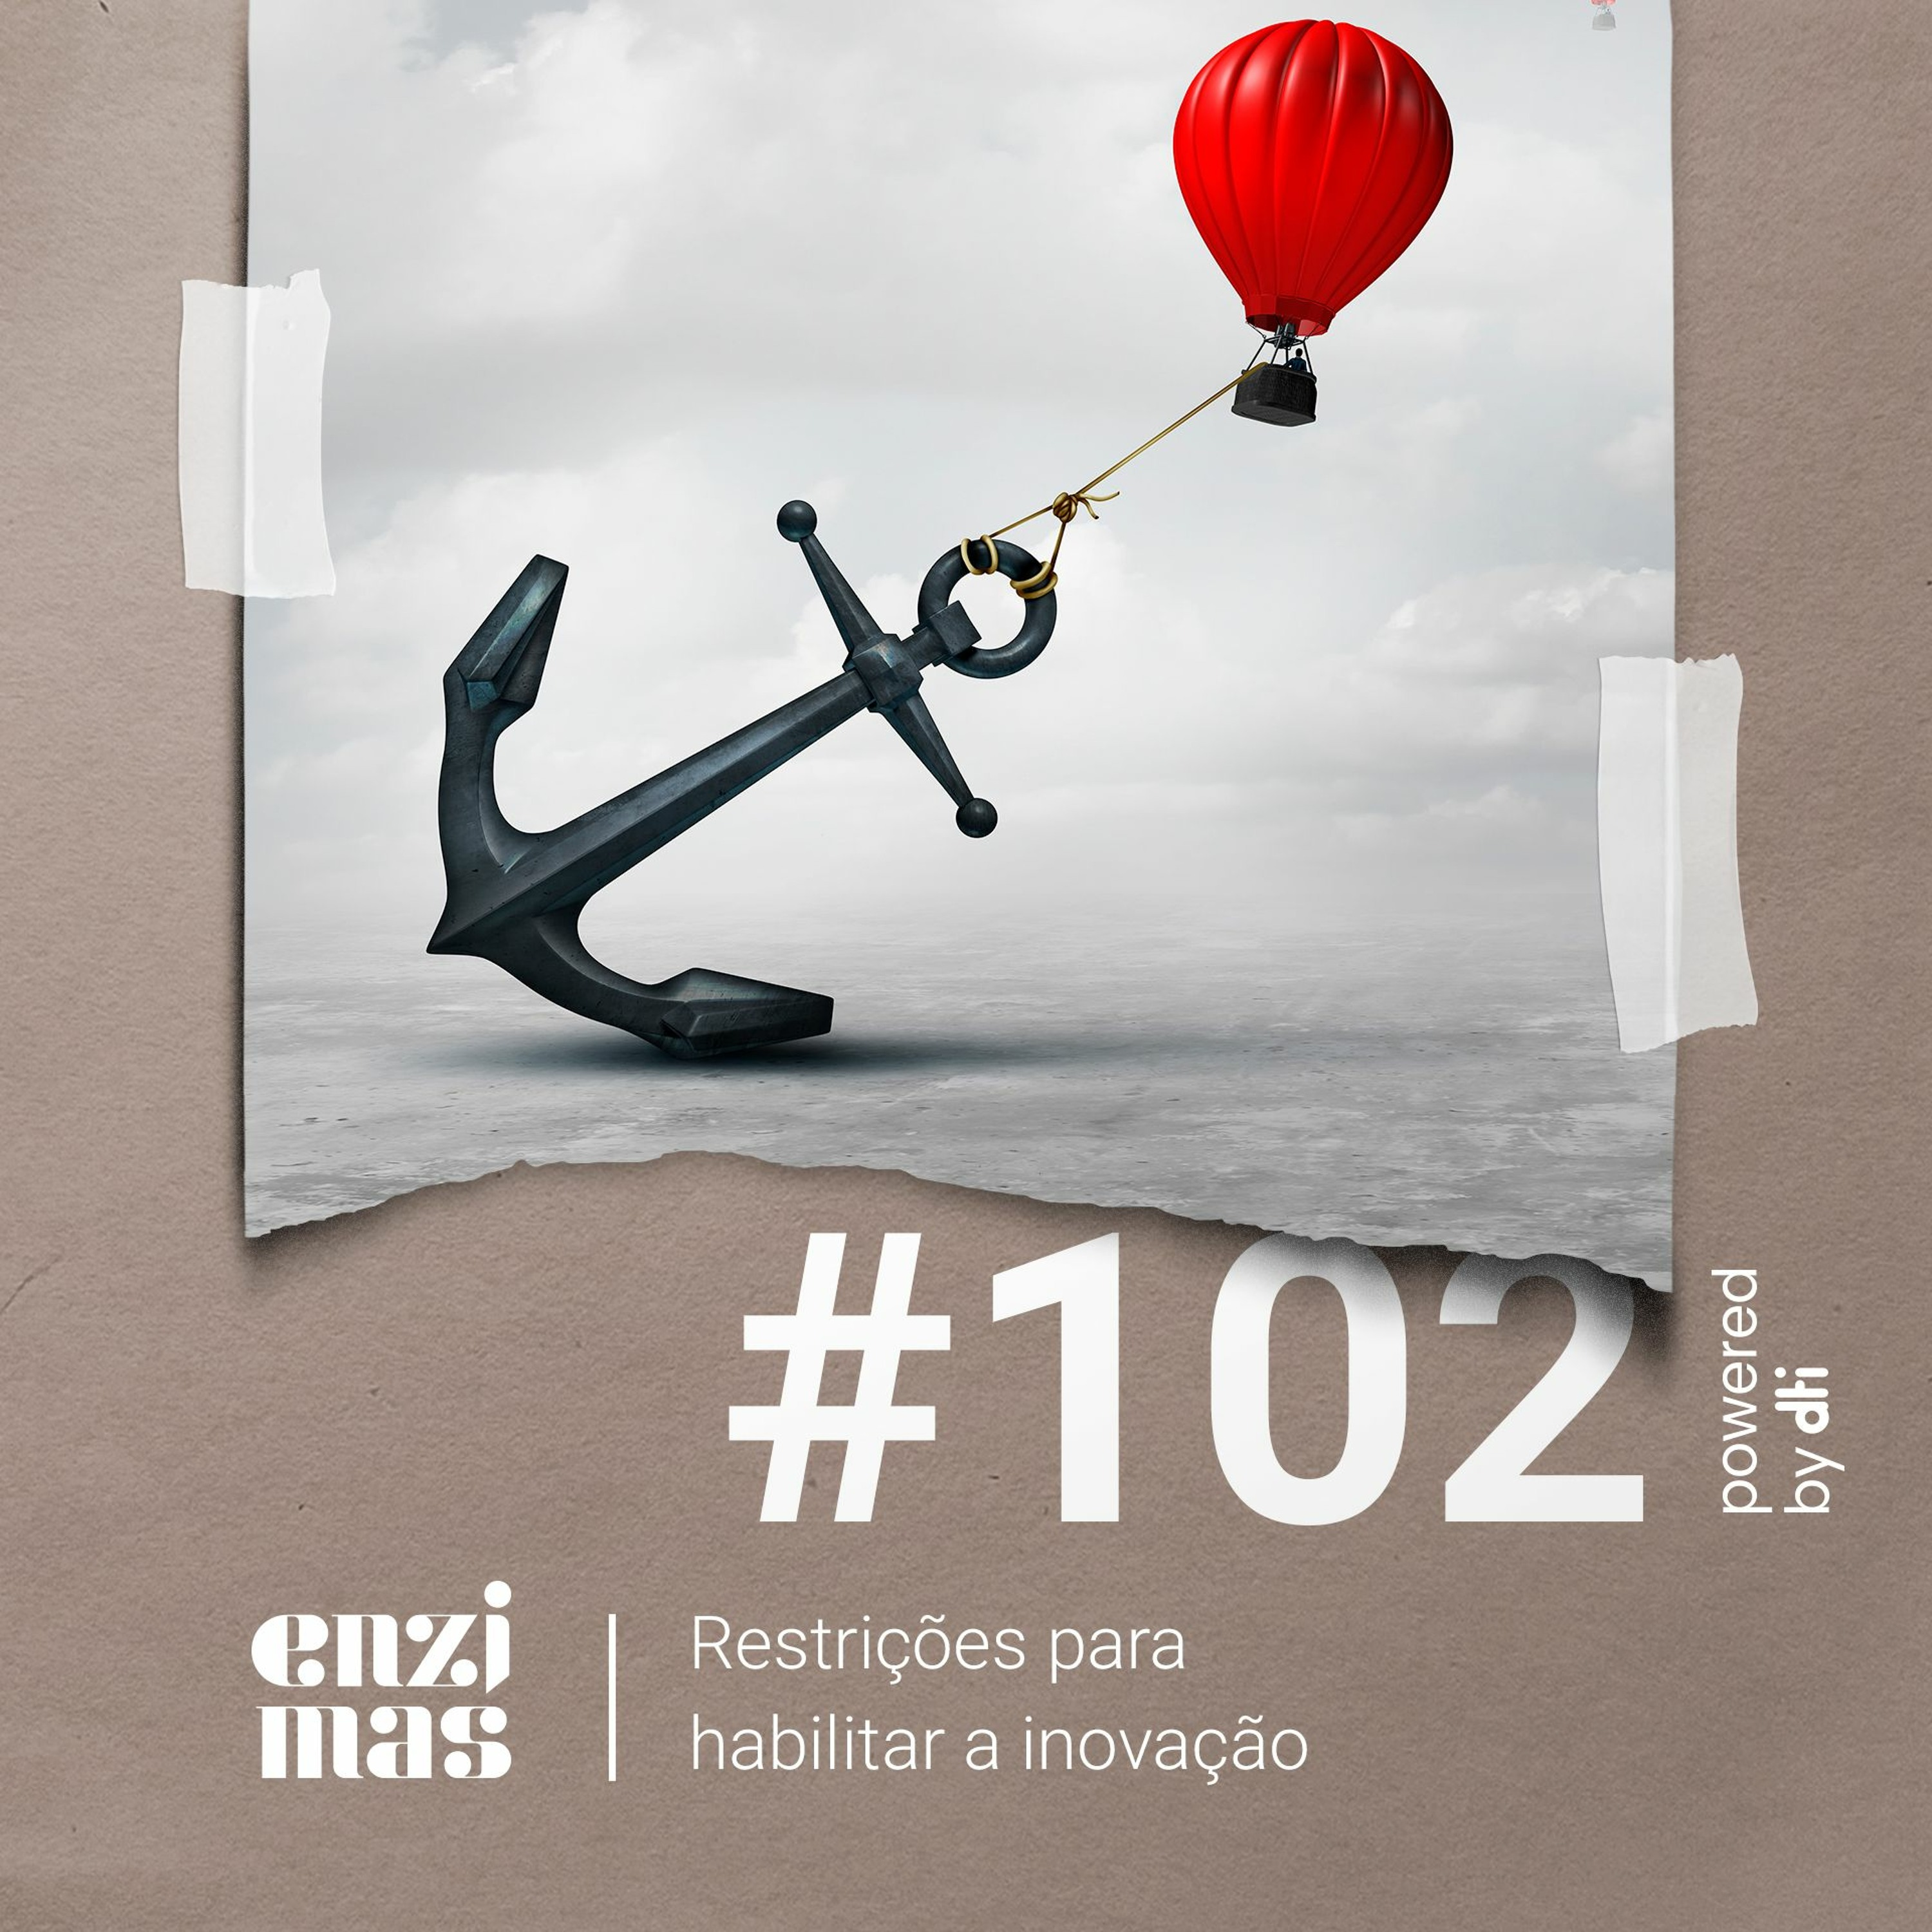 ENZIMAS #102 Restrições para habilitar a inovação